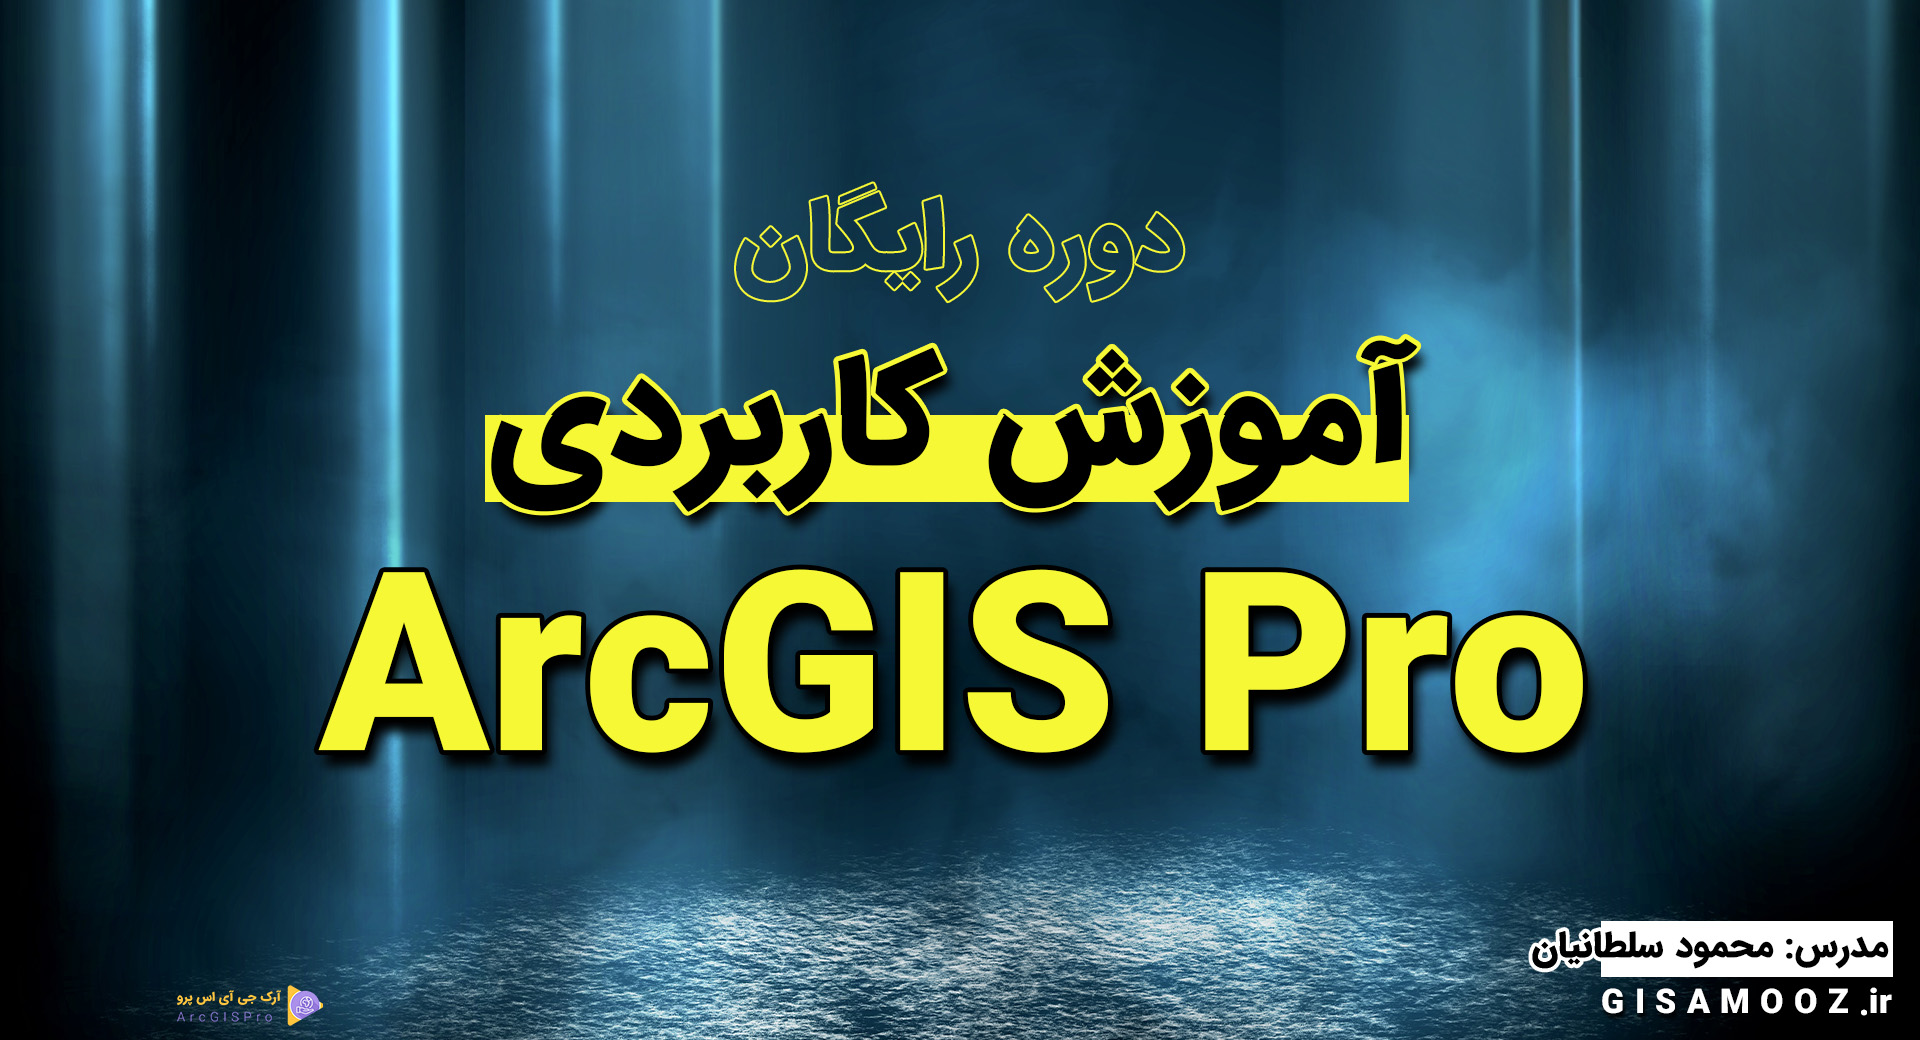 آموزش رایگان ArcGIS Pro به صورت کاربردی